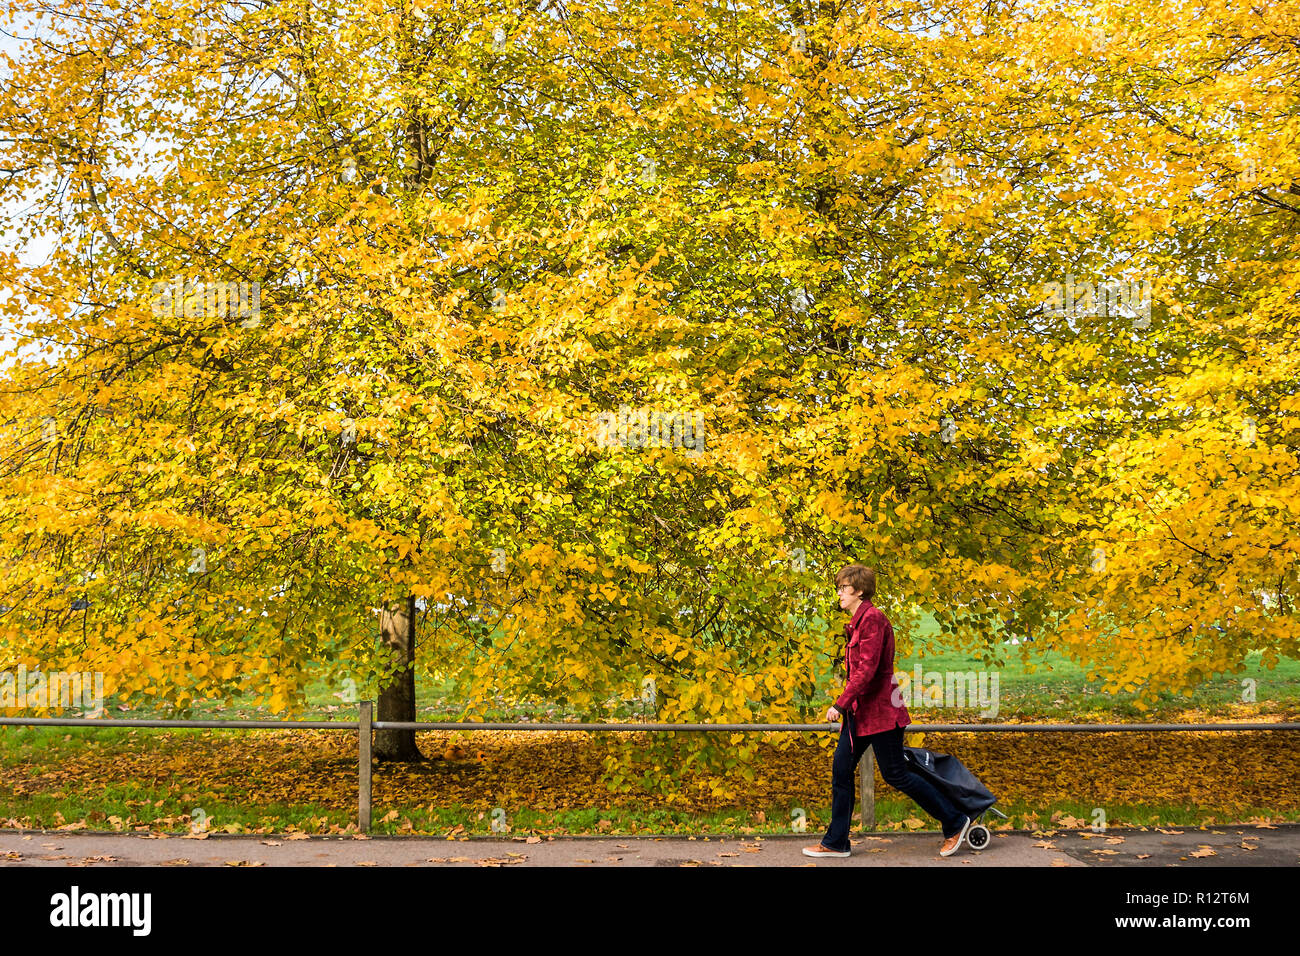 Clapham Common, Londra. 8 Nov 2018. Regno Unito Meteo: il sole splende alberi su Clapham Common, evidenziando i colori autunnali. Un tranquillo contrasto con la scena del recente accoltellato un po' più in giù sulla stessa strada. Credito: Guy Bell/Alamy Live News Foto Stock